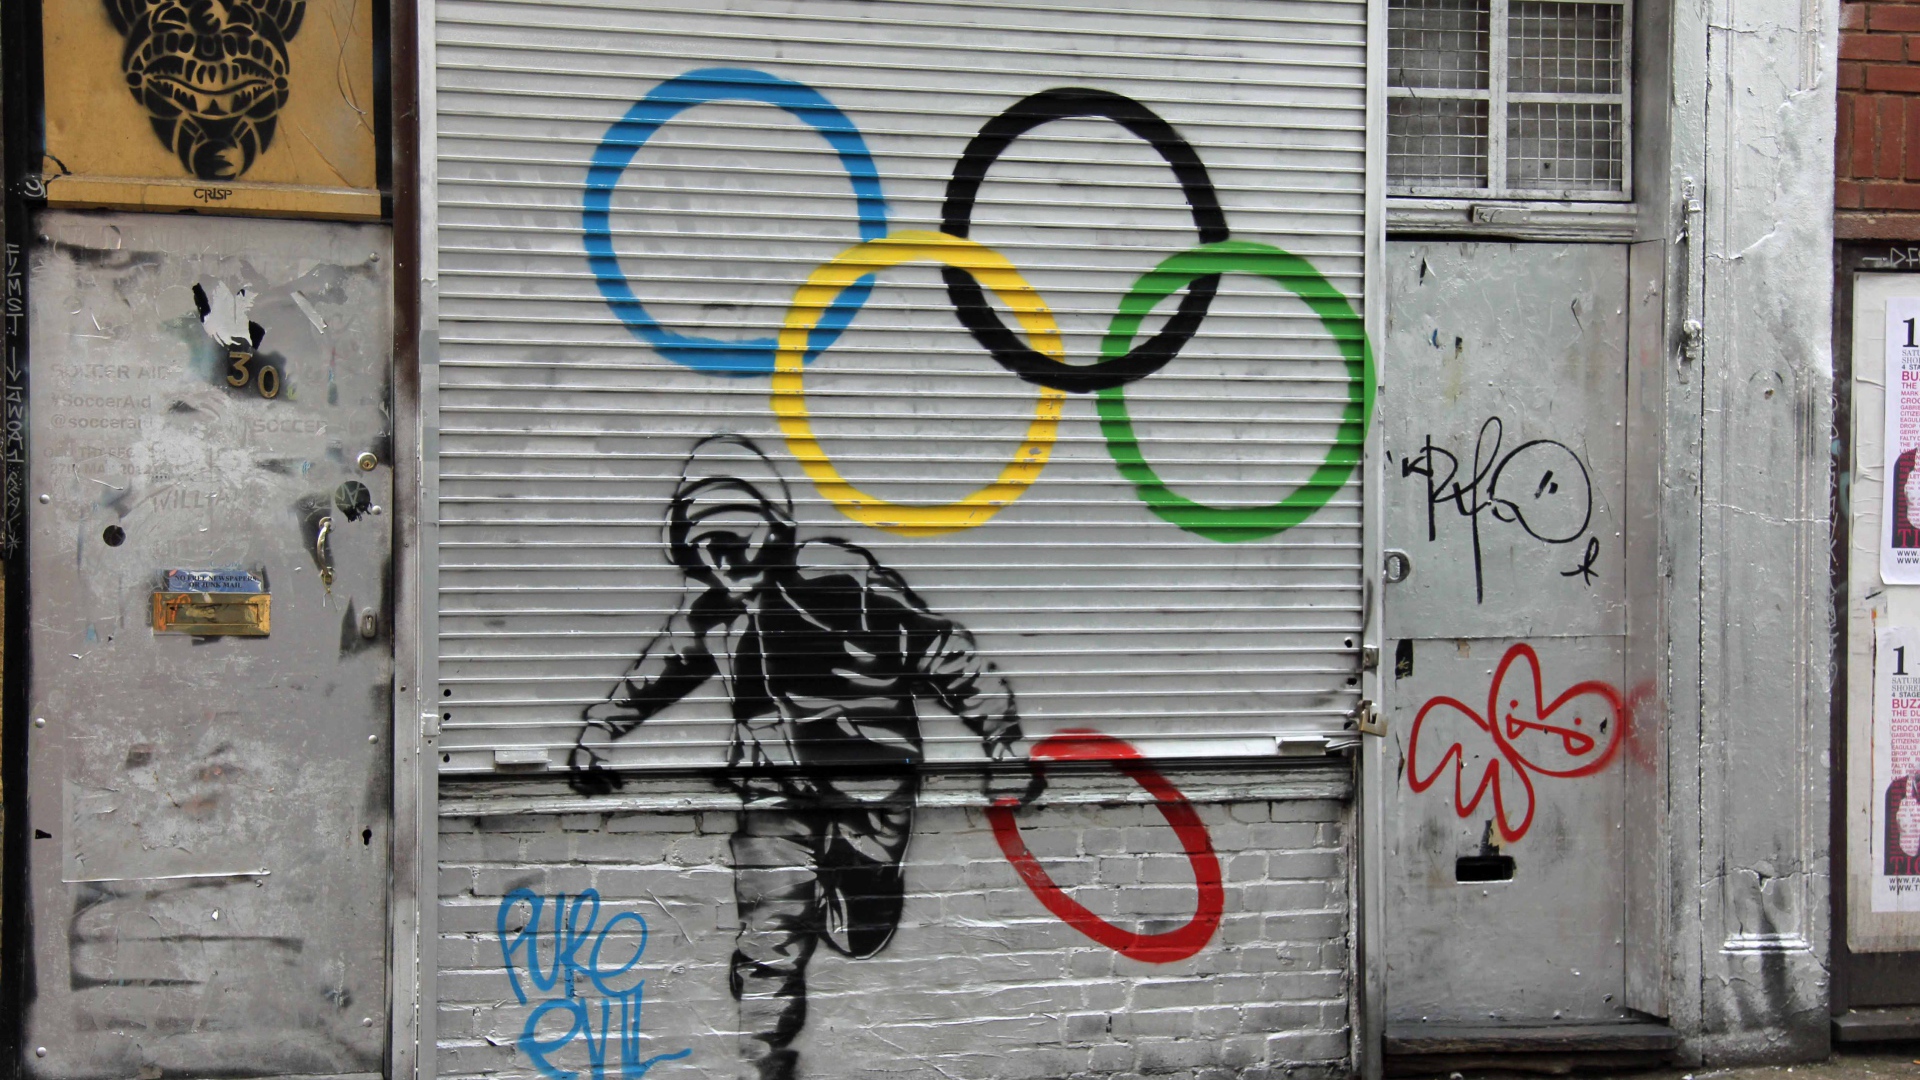 Streetart in Sochi in 2014